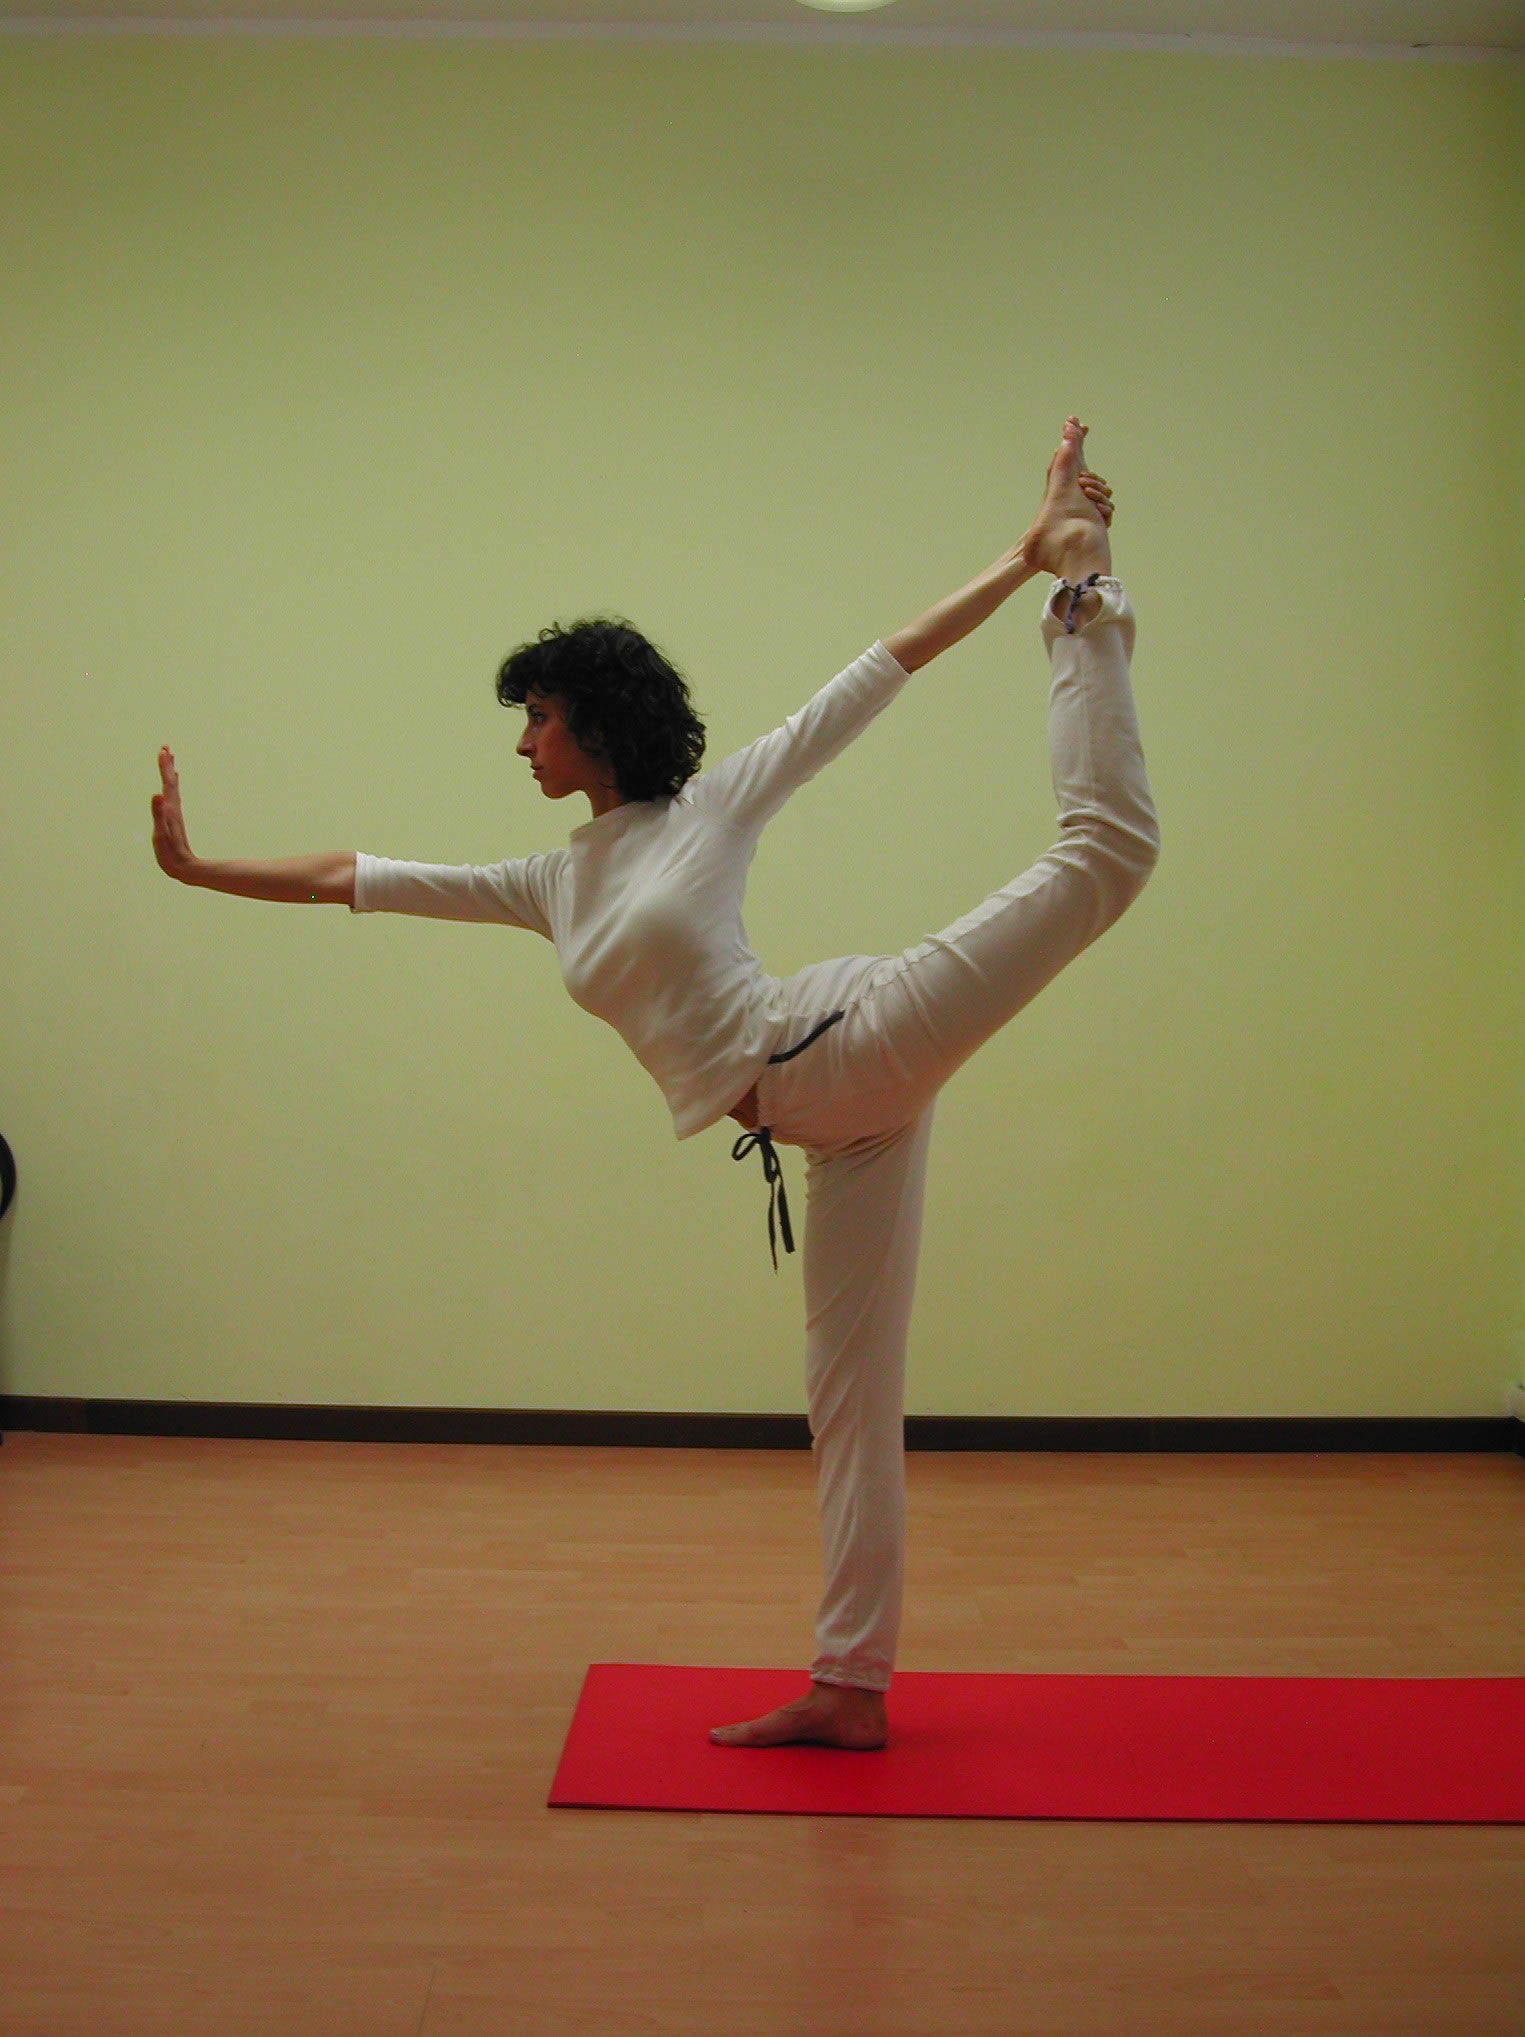 c. repetto yoga